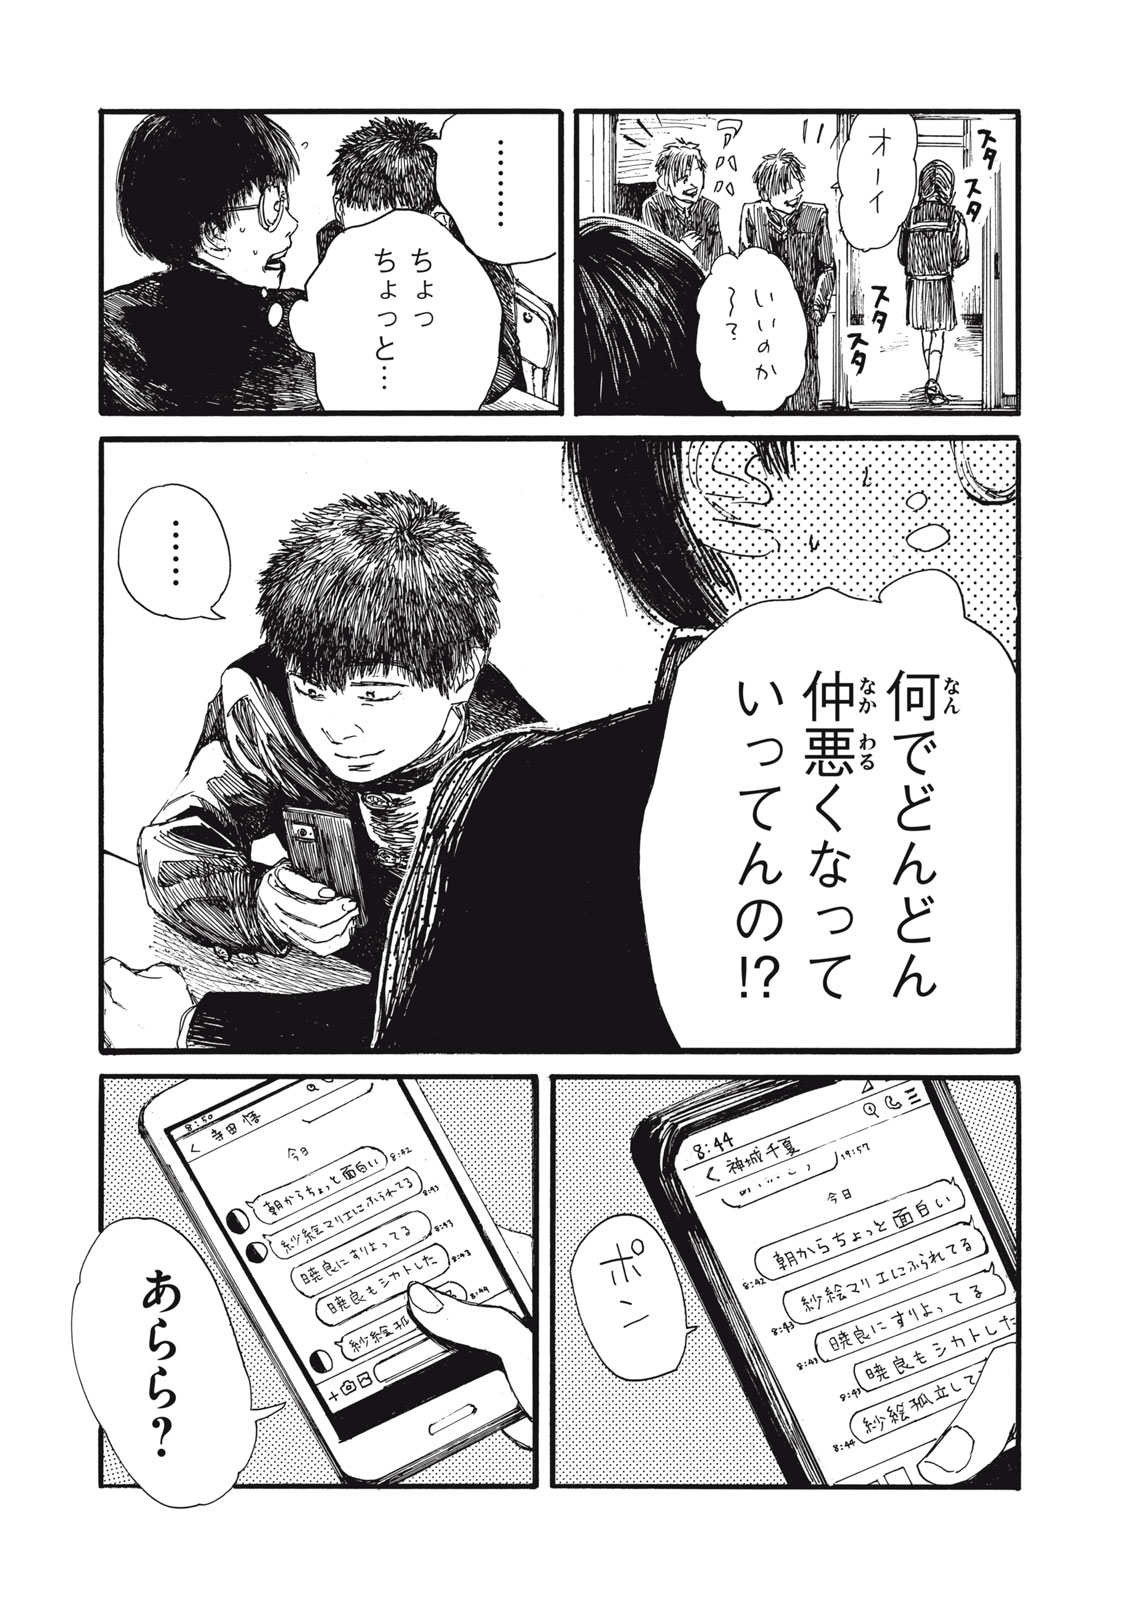 Watashi no Hara no Naka no Bakemono - Chapter 39 - Page 11